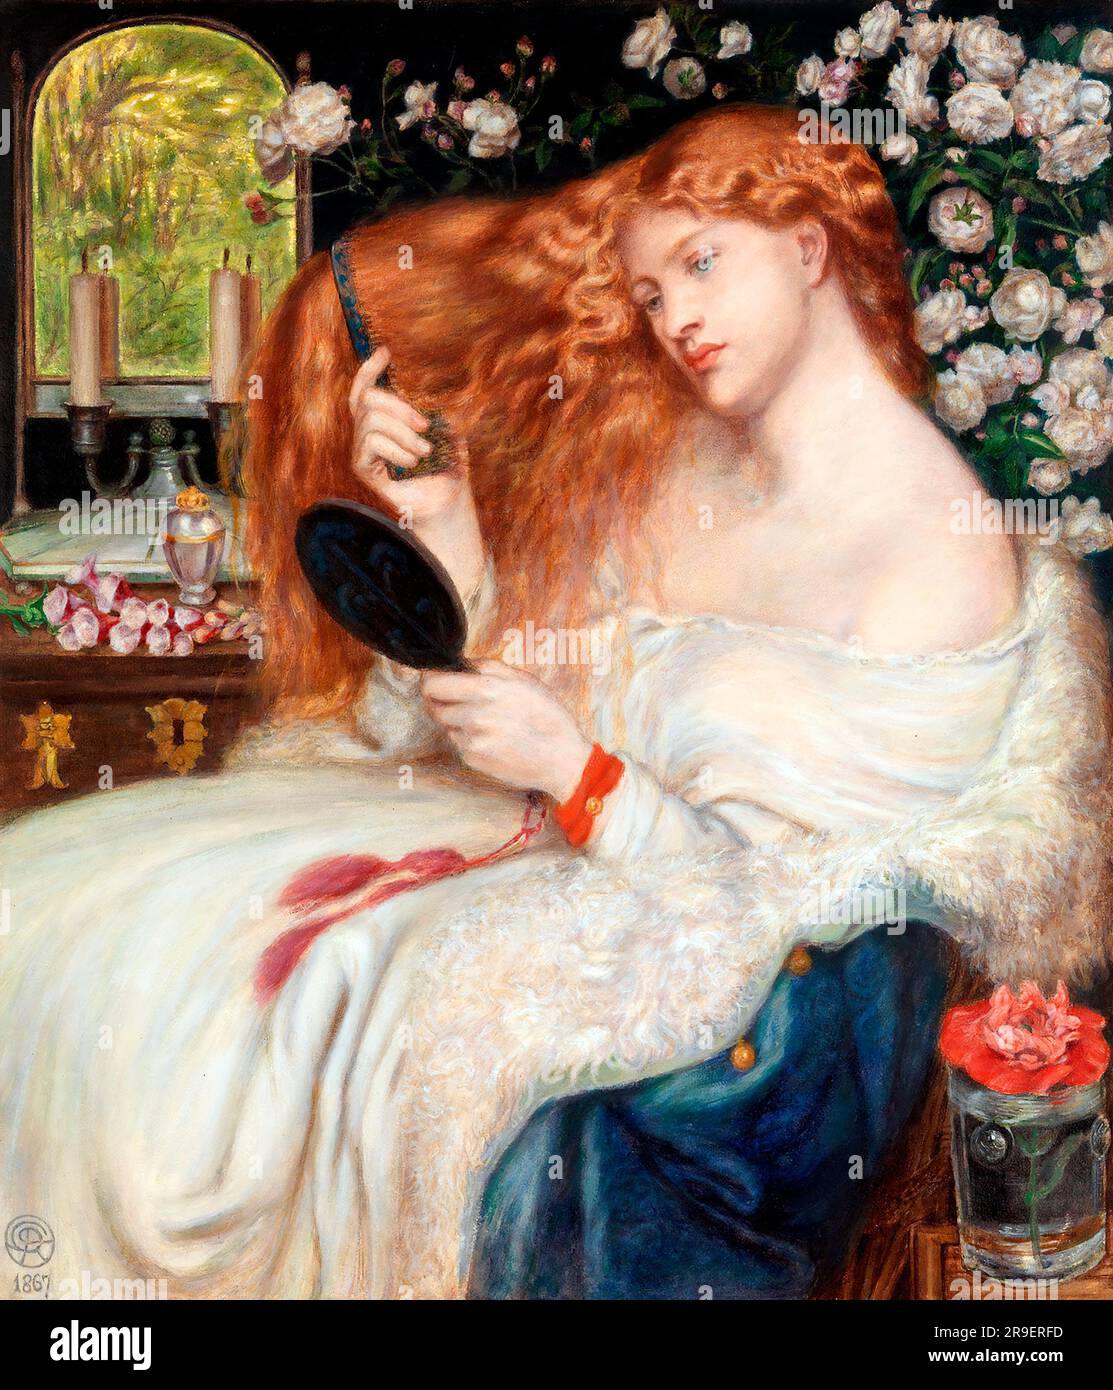 Lady Lilith par Gabriel Dante Rossetti (1828-1882), aquarelle et gouache, 1867 Banque D'Images